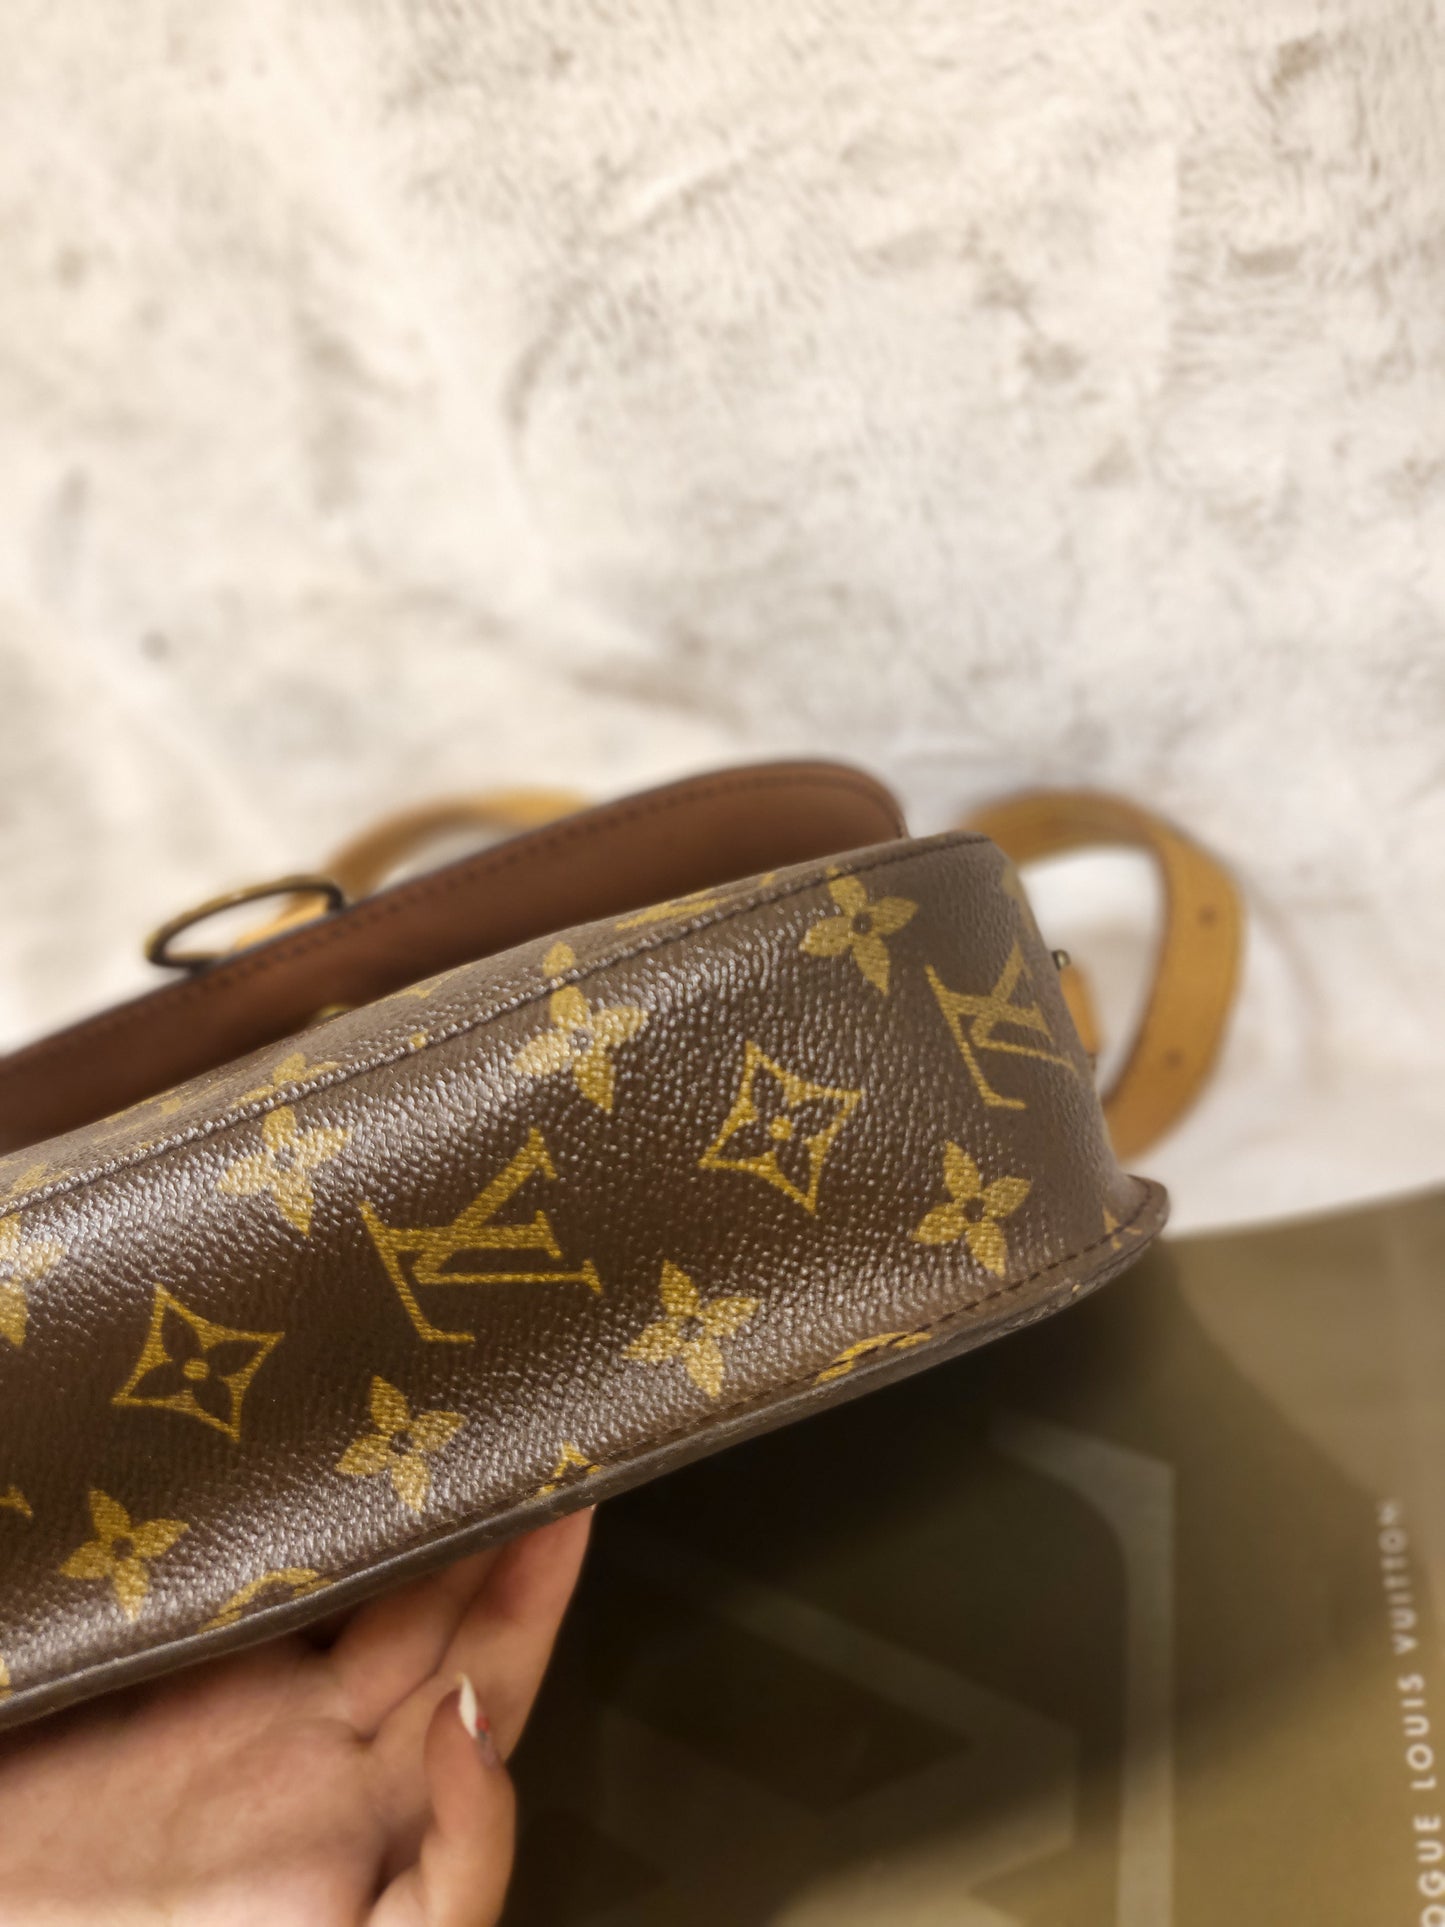 Authentic pre-owned Louis Vuitton saint Cloud gm crossbody shoulder bag